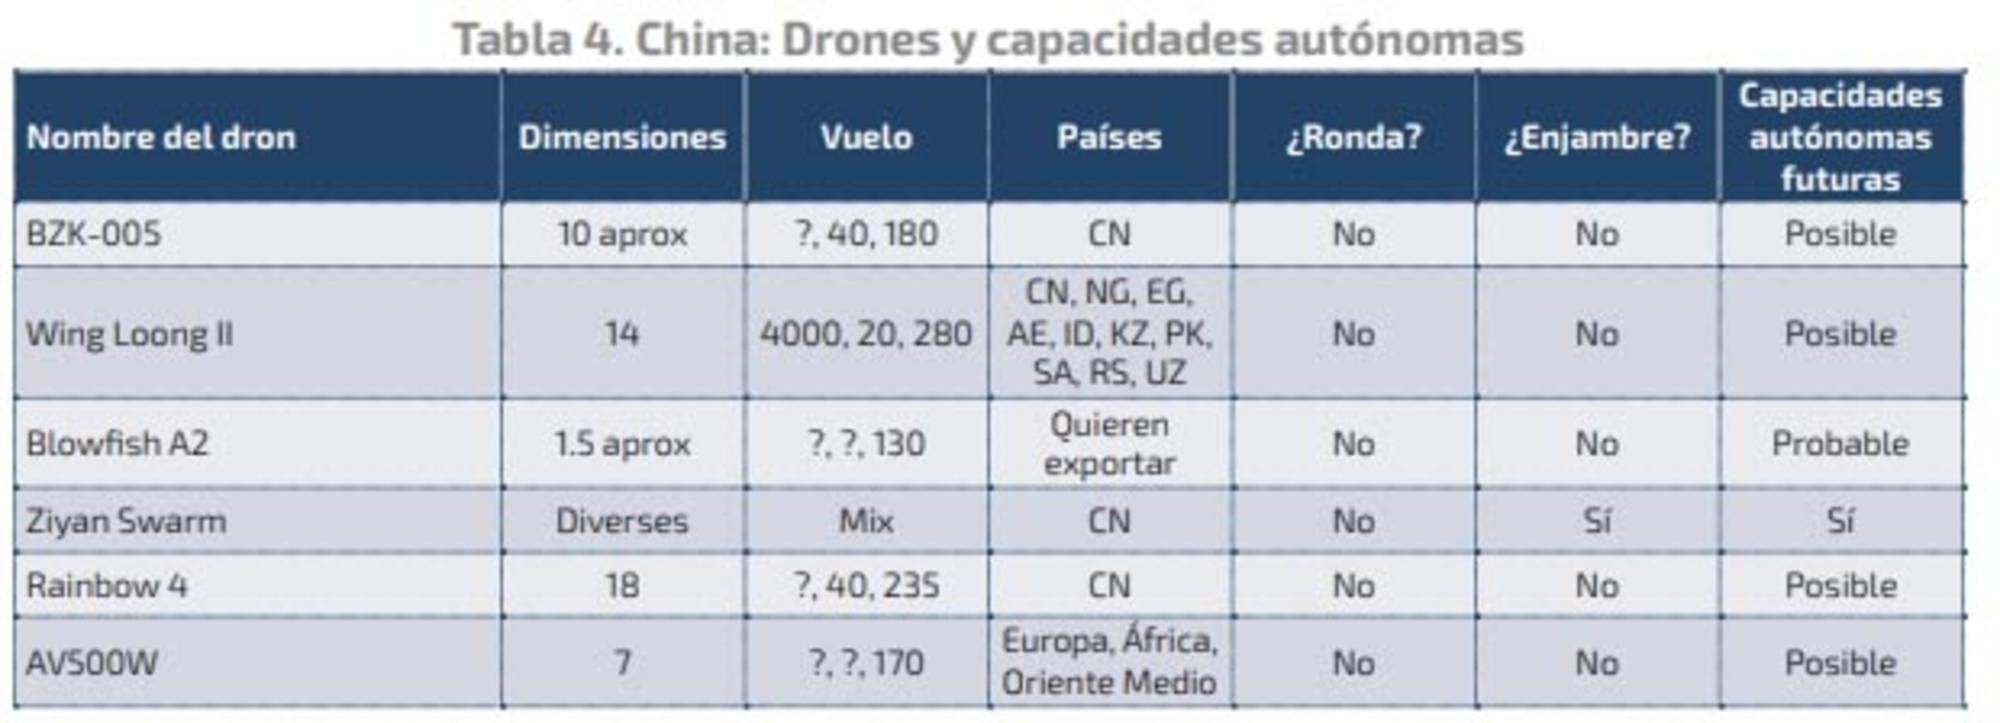 Armas autónomas de China